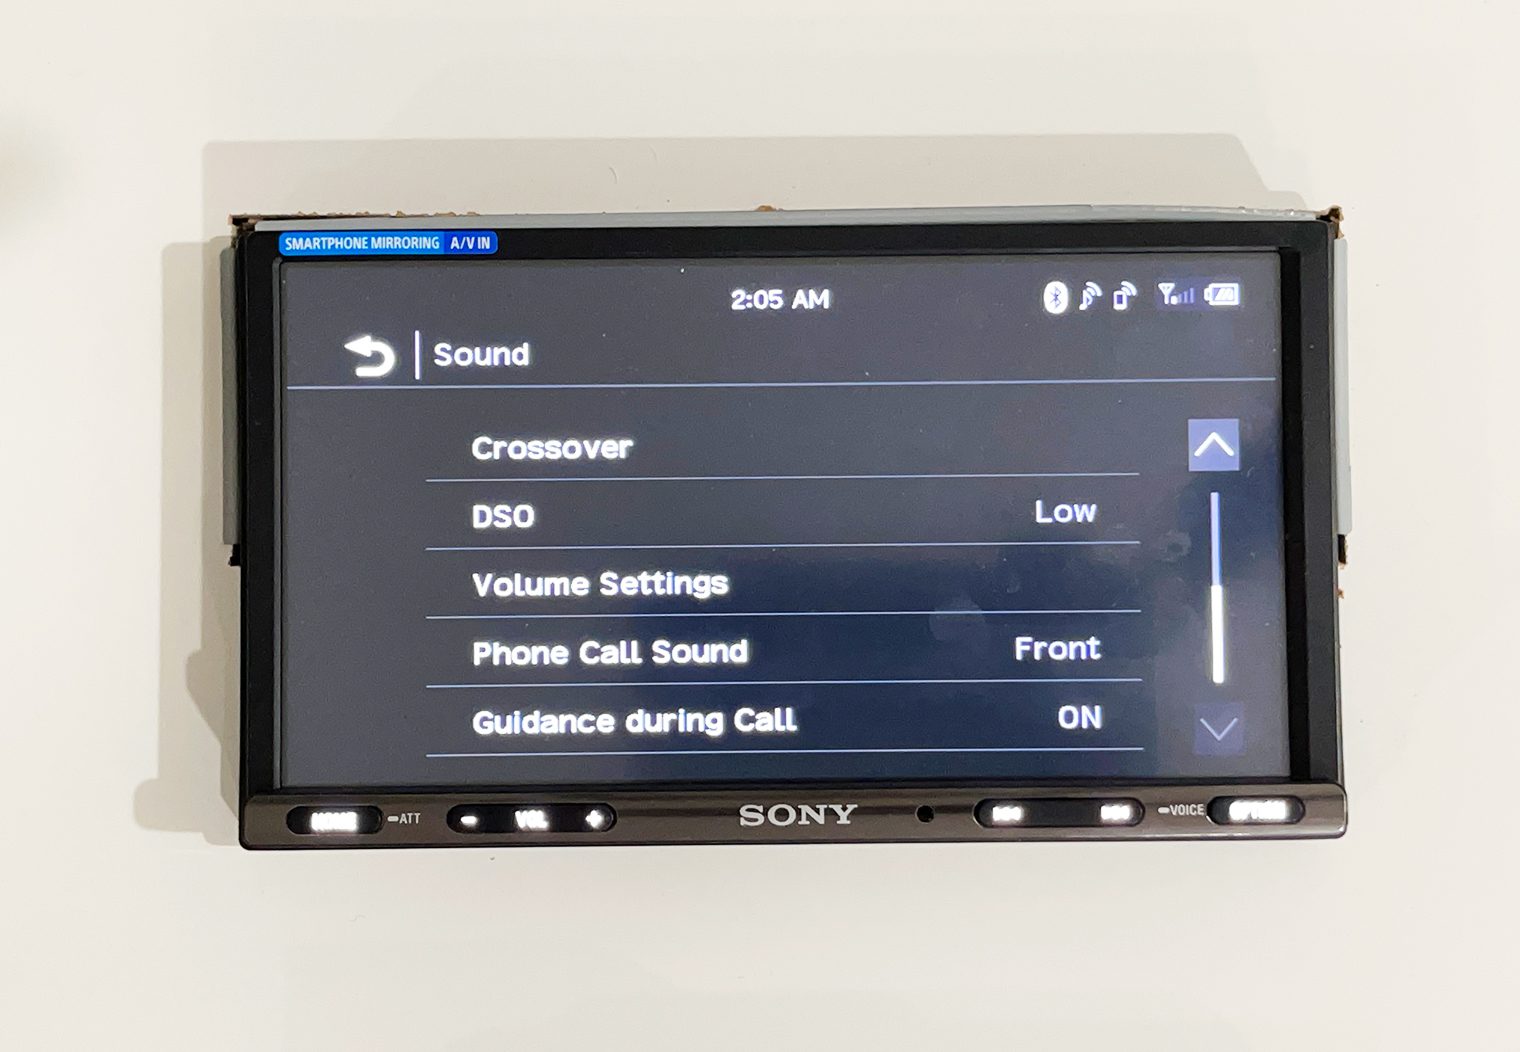 Sony XAV-AX3200 general settings